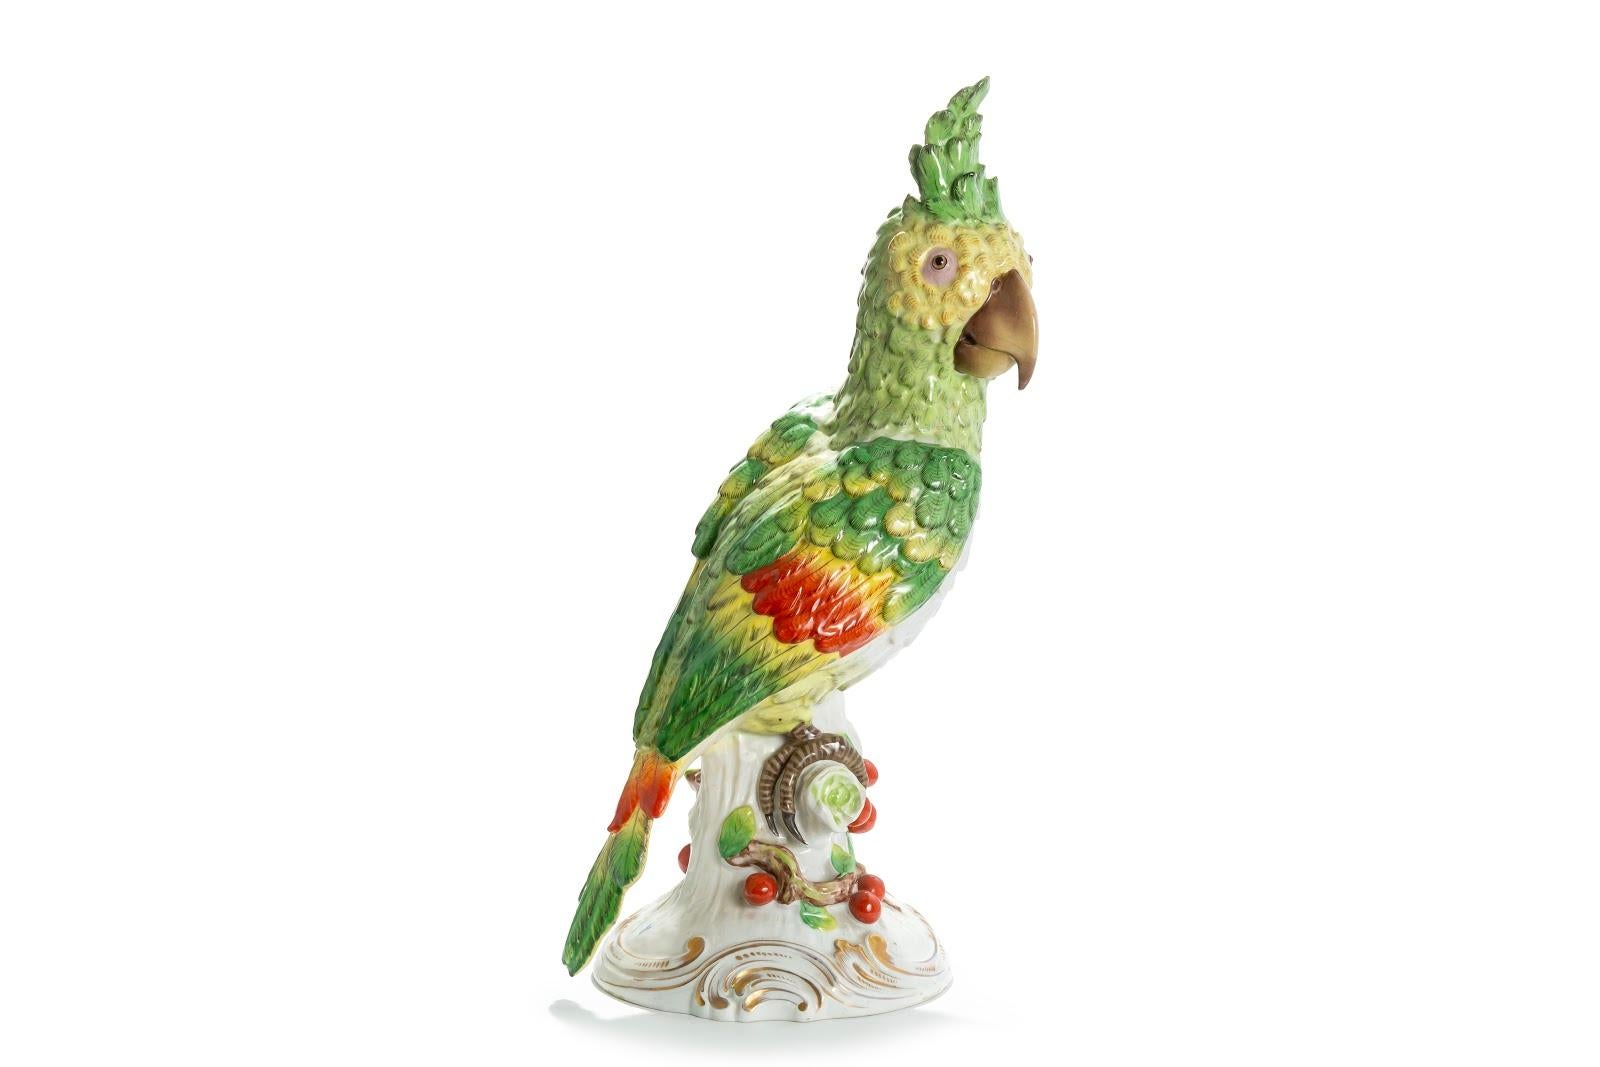 Une queue du perroquet est légèrement restaurée.
19ème siècle
Porcelaine
Meissen, Allemagne
Marque pour Meissen
Mesures : Hauteur 54 cm
Largeur 22 cm.
   
    